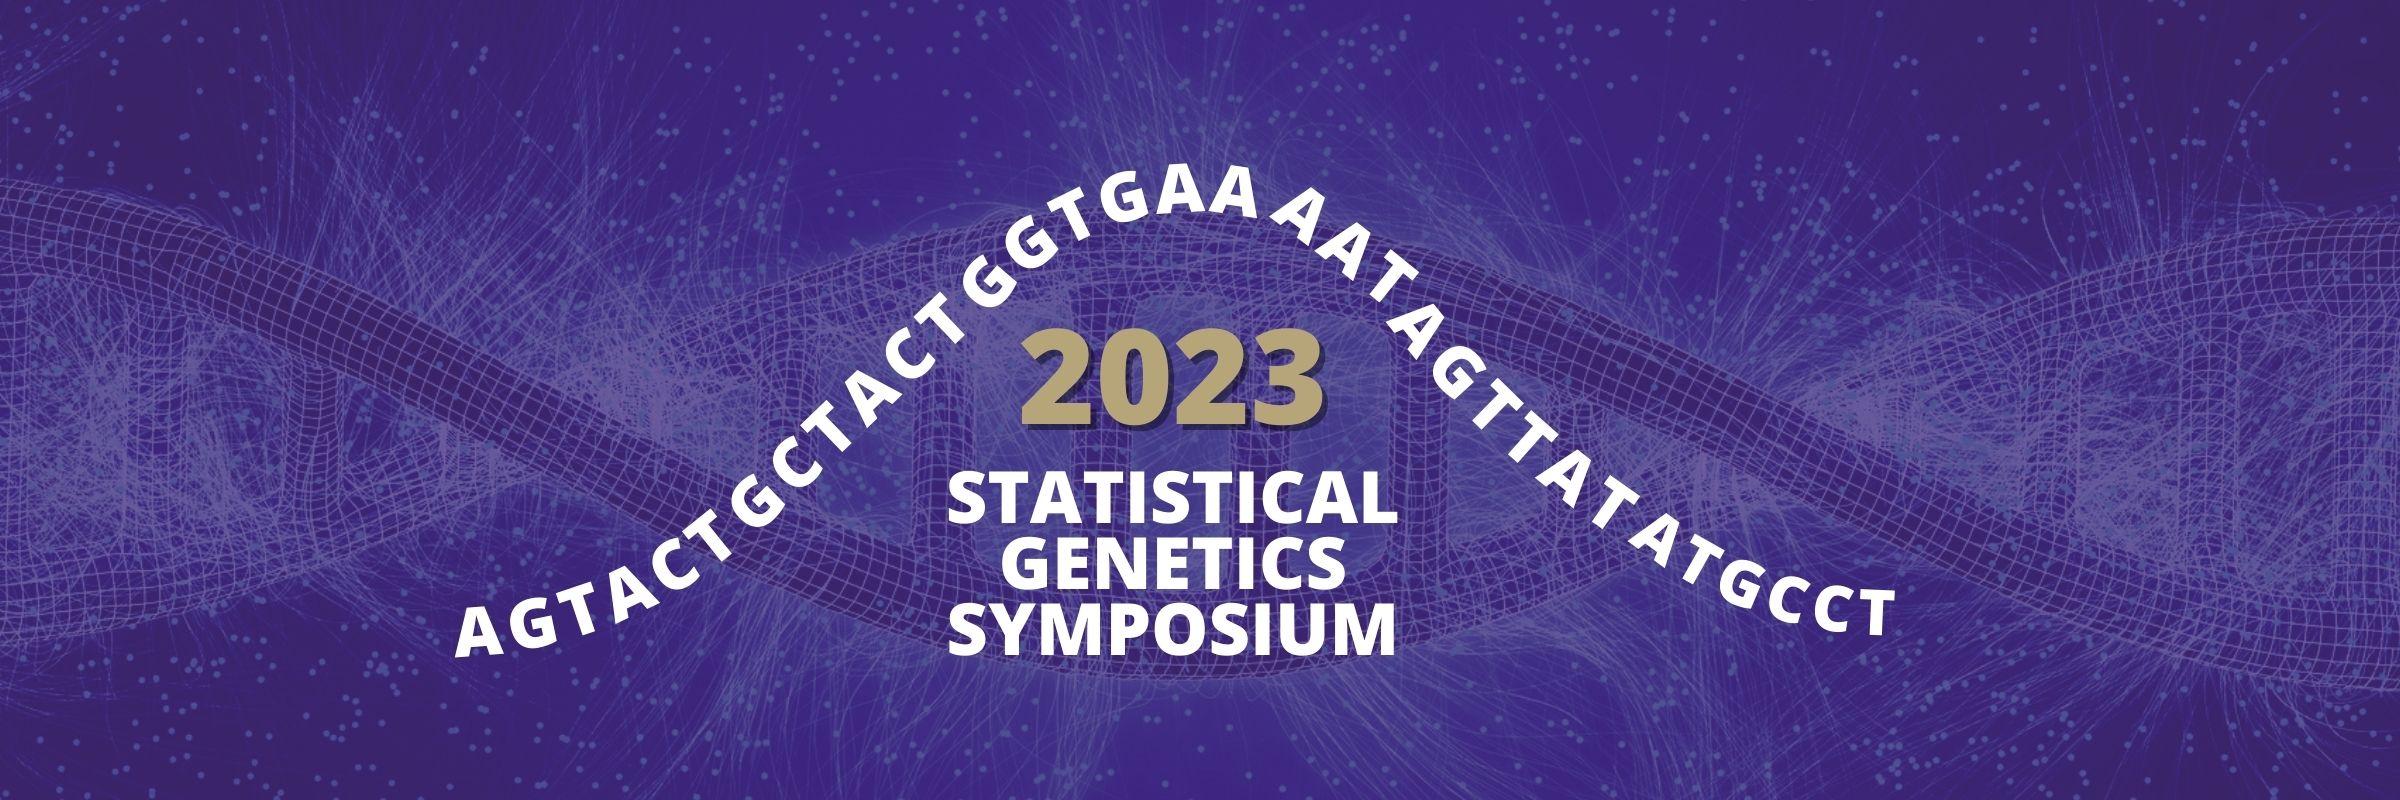 2023 Statistical Genetics Symposium